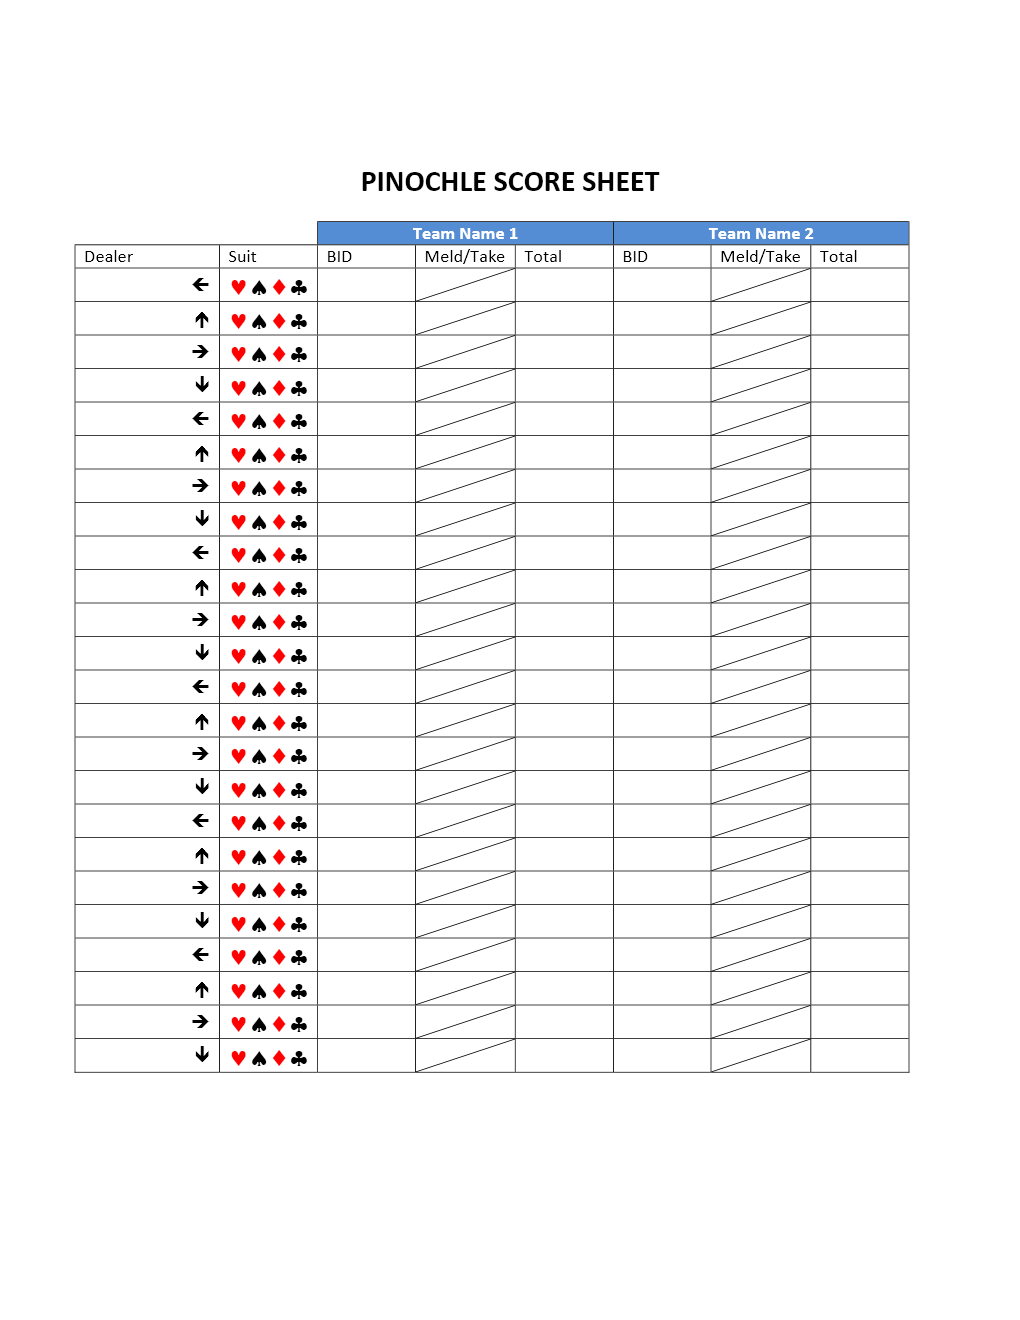 Pinochle Score Sheet